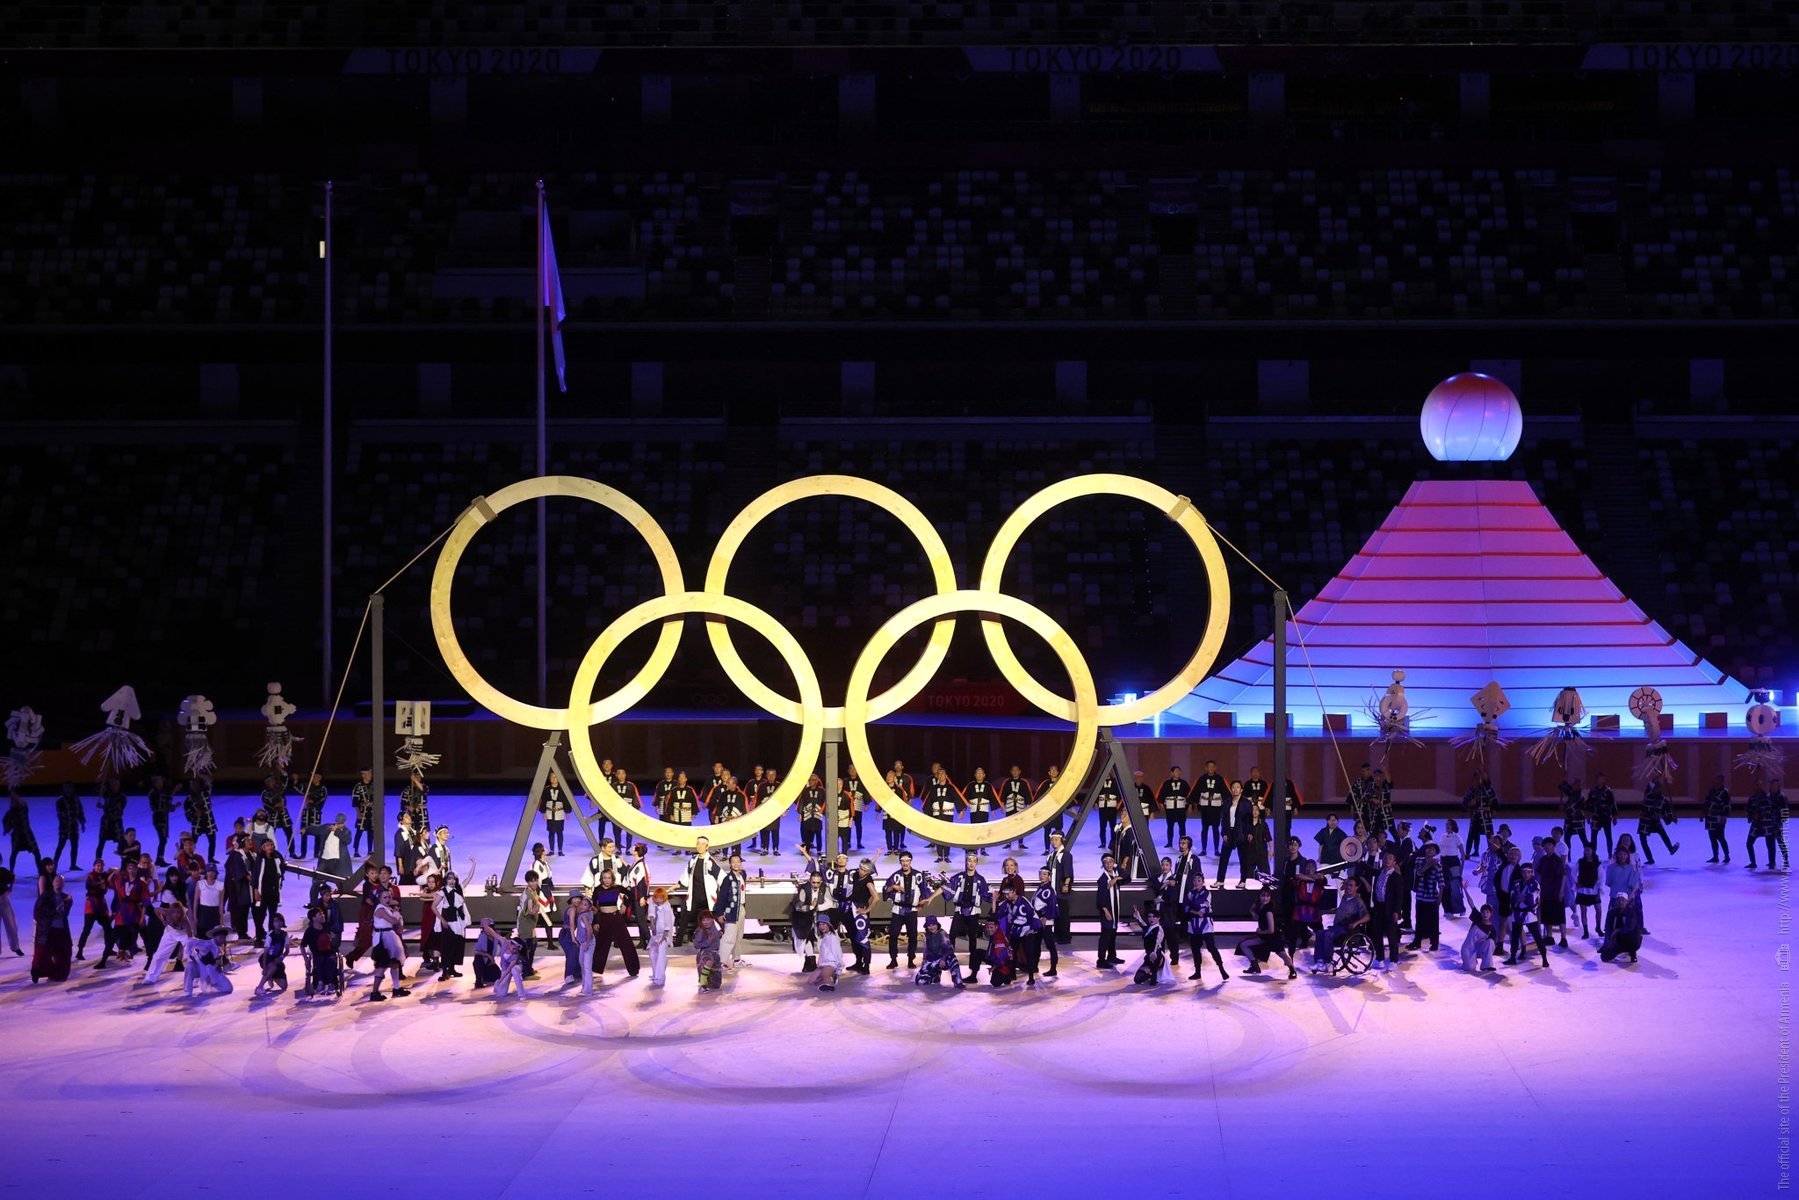 Արմեն Սարգսյանը ներկա է գտնվել Տոկիոյի ամառային Օլիմպիական խաղերի բացման պաշտոնական արարողությանը